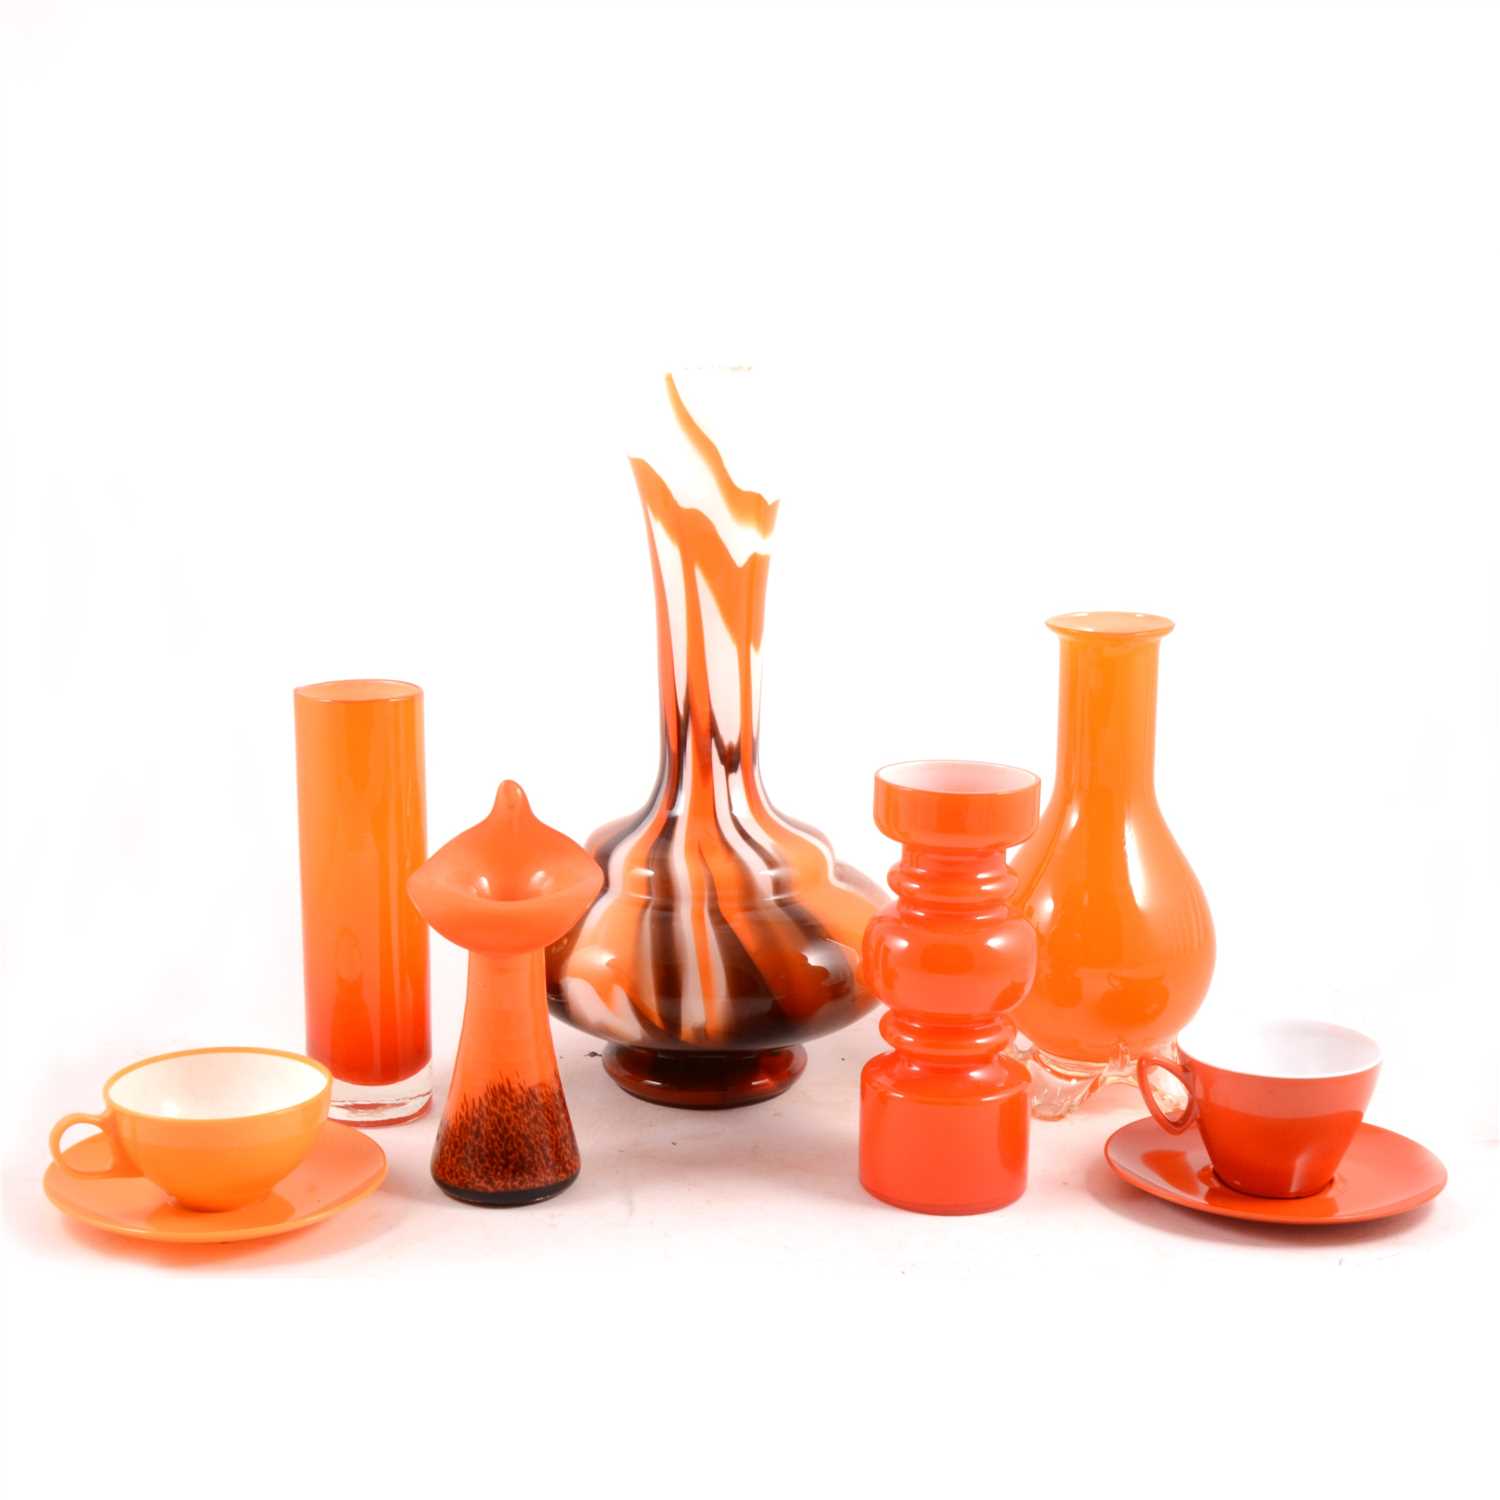 Lot 65 - A collection of retro glassware and orange Melmex picnic set